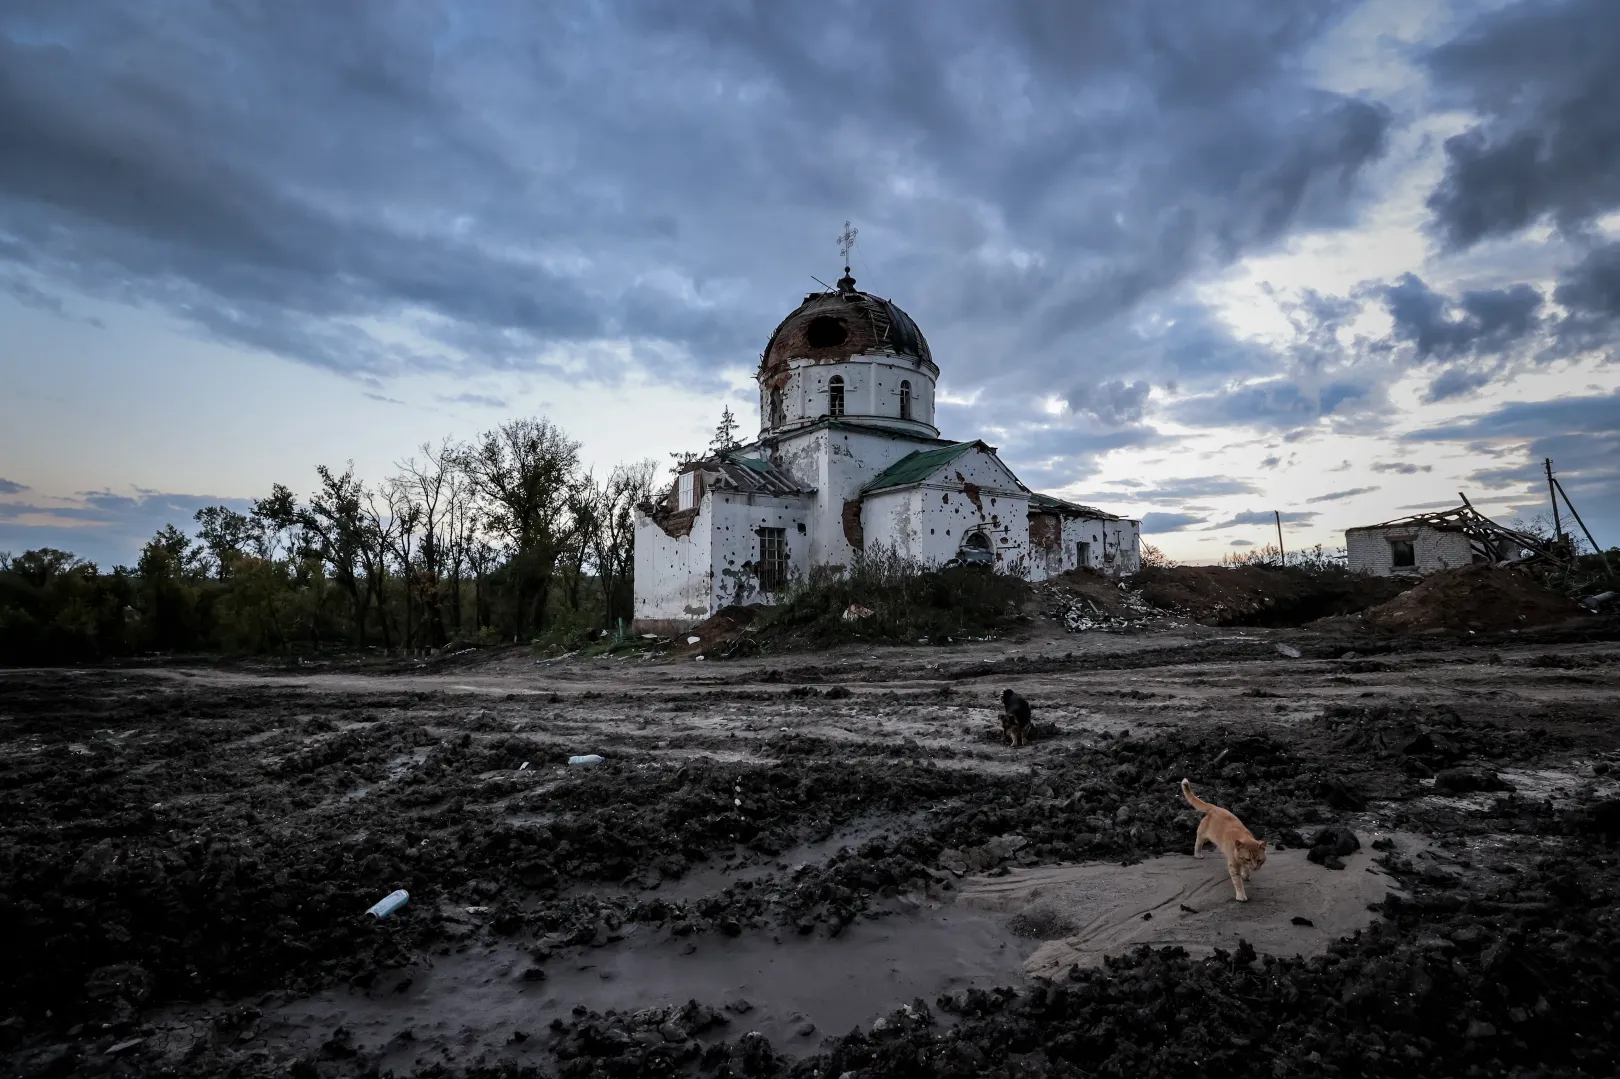 Mala Komisuvaha kétszáz éves temploma, amelyet az orosz megszállók katonai kórháznak használtak, mielőtt a harcokban súlyosan megsérült – Fotó: Huszti István / Telex